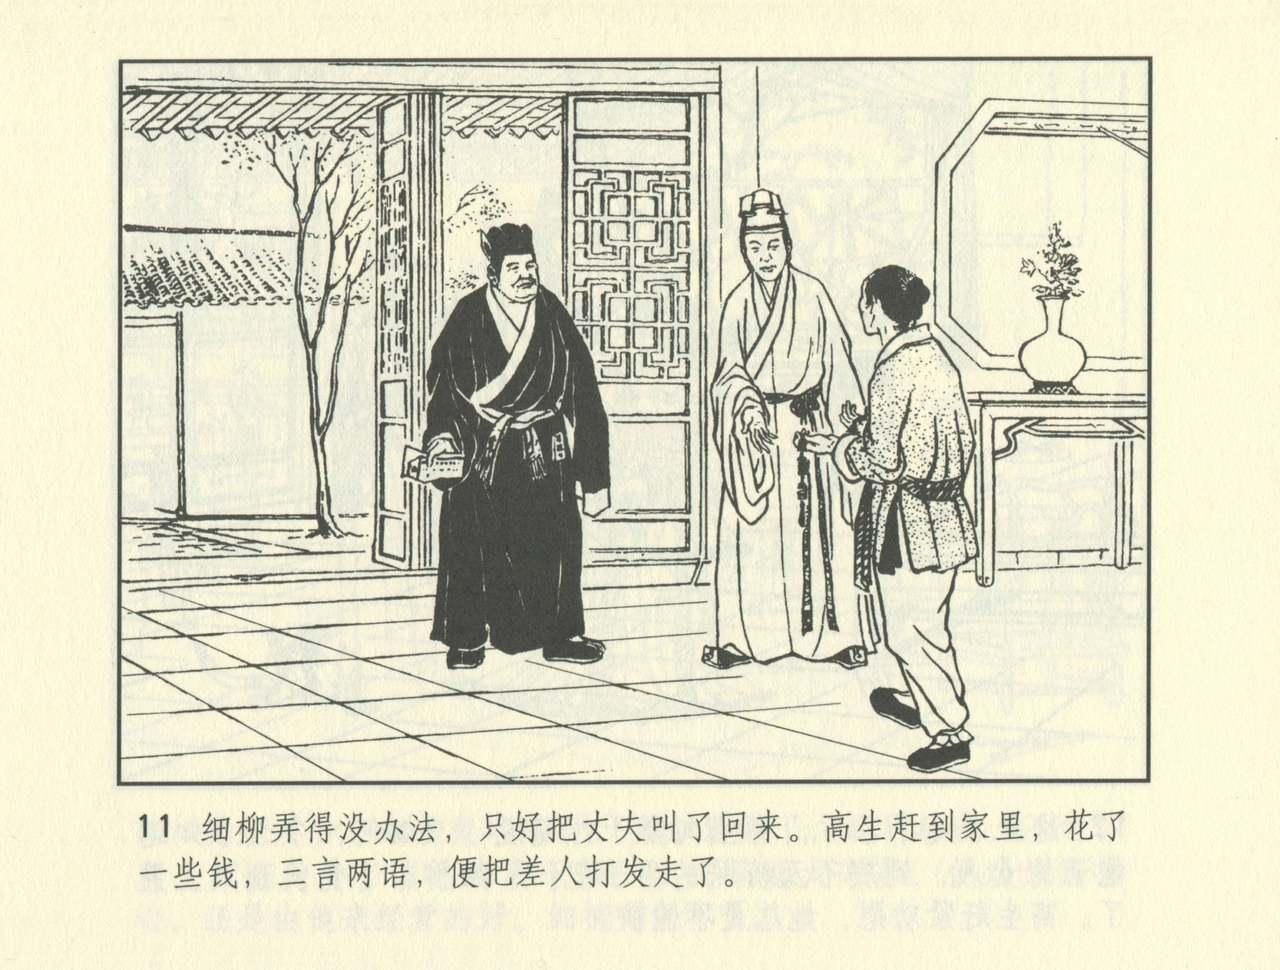 聊斋志异 张玮等绘 天津人民美术出版社 卷二十一 ~ 三十 483